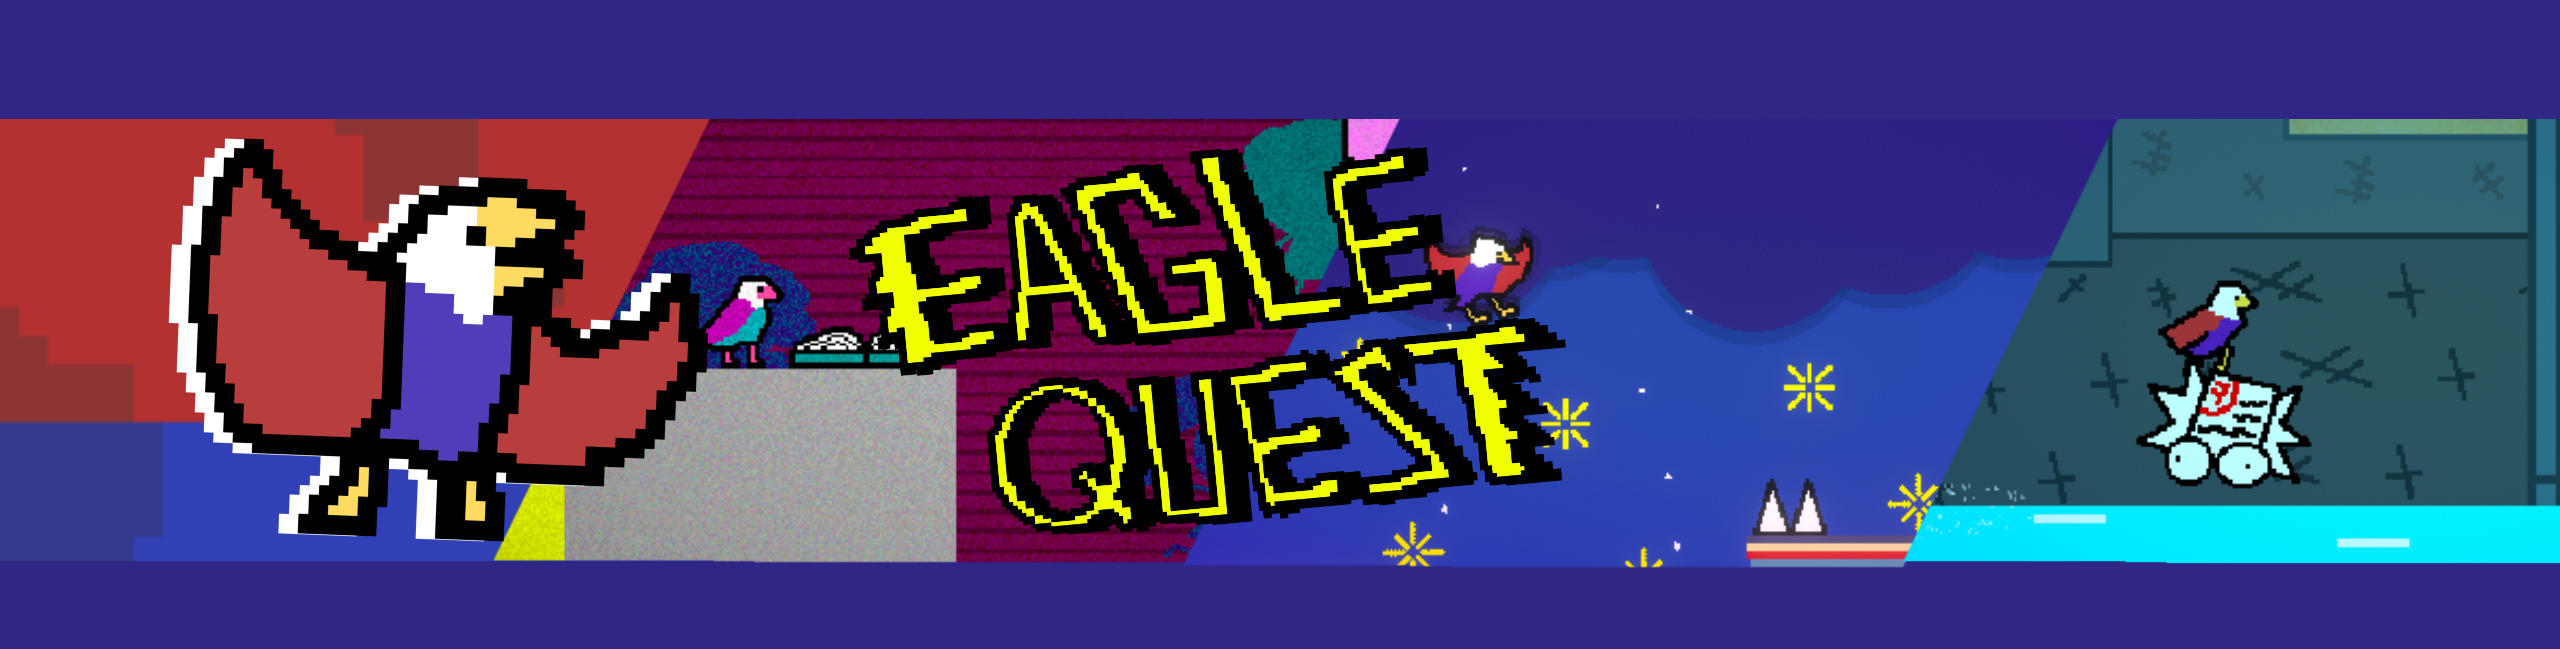 Eagle Quest